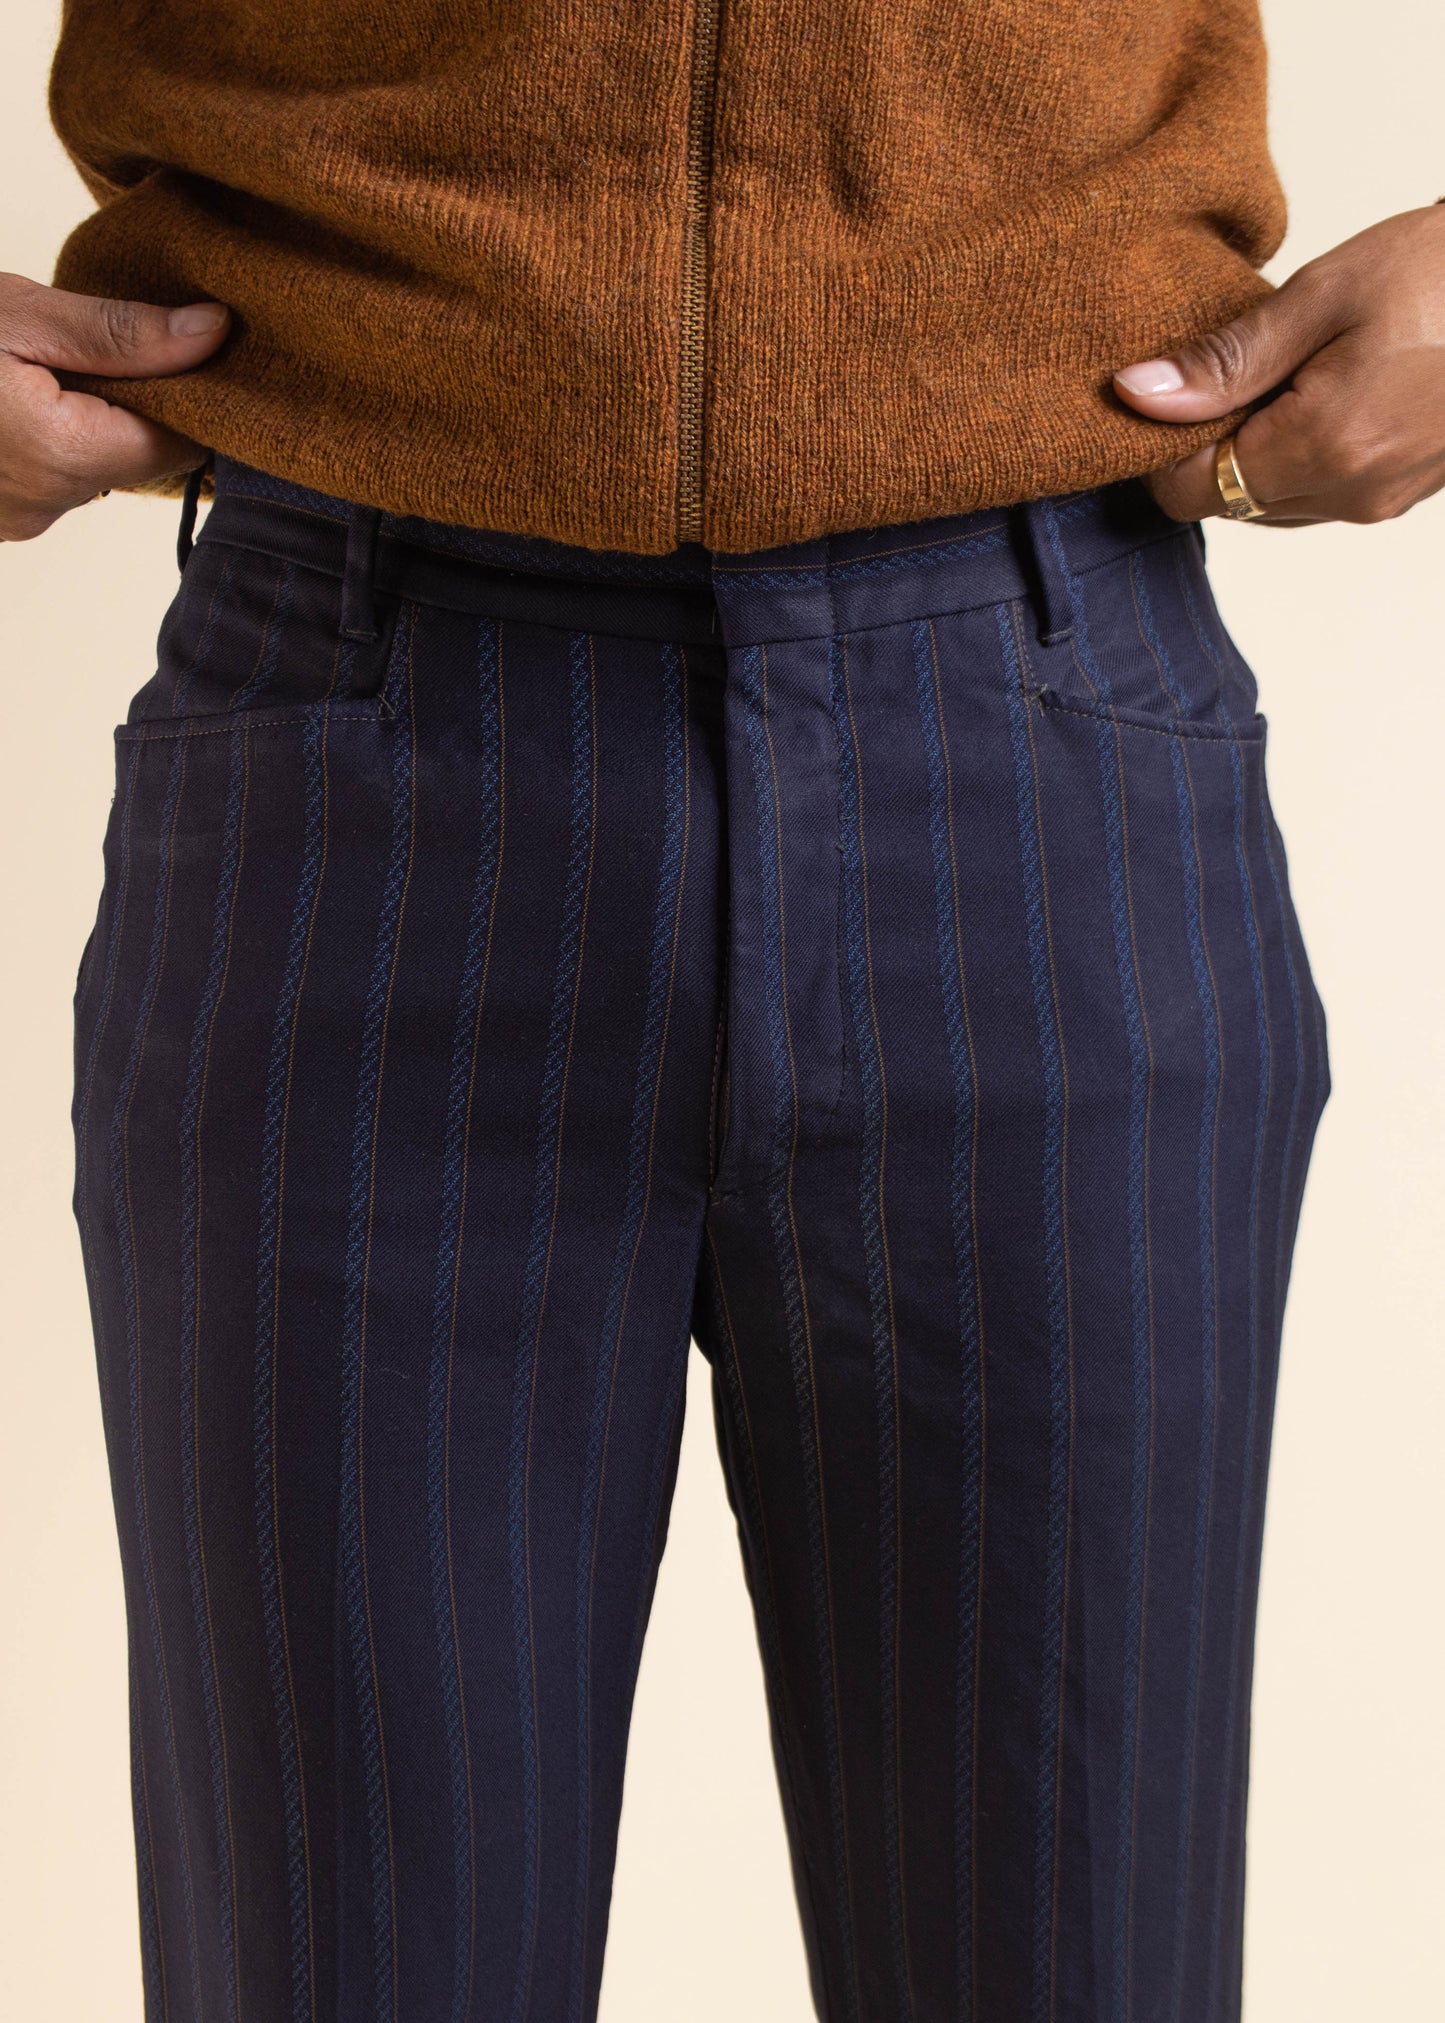 1970s Wonder Crease Stripe Pattern Wool Trouser Pants Size Women's 30 Men's 32 - 5877 blue